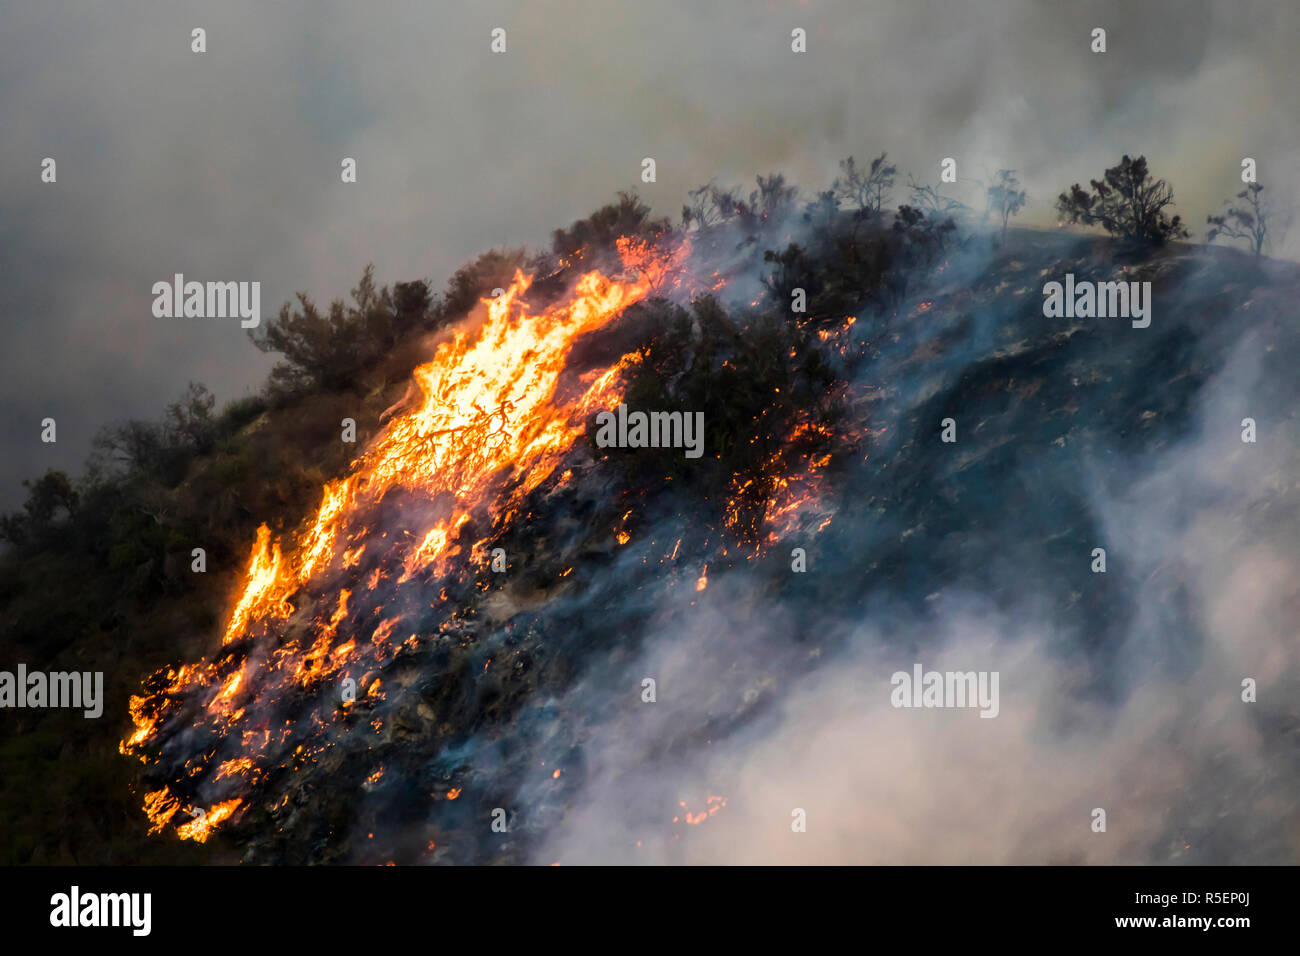 Wildfire Flammen brennen Hang Bürste in der Nacht mit dramatischen Formen und Farbe in der Kalifornischen Woolsey Feuer Stockfoto